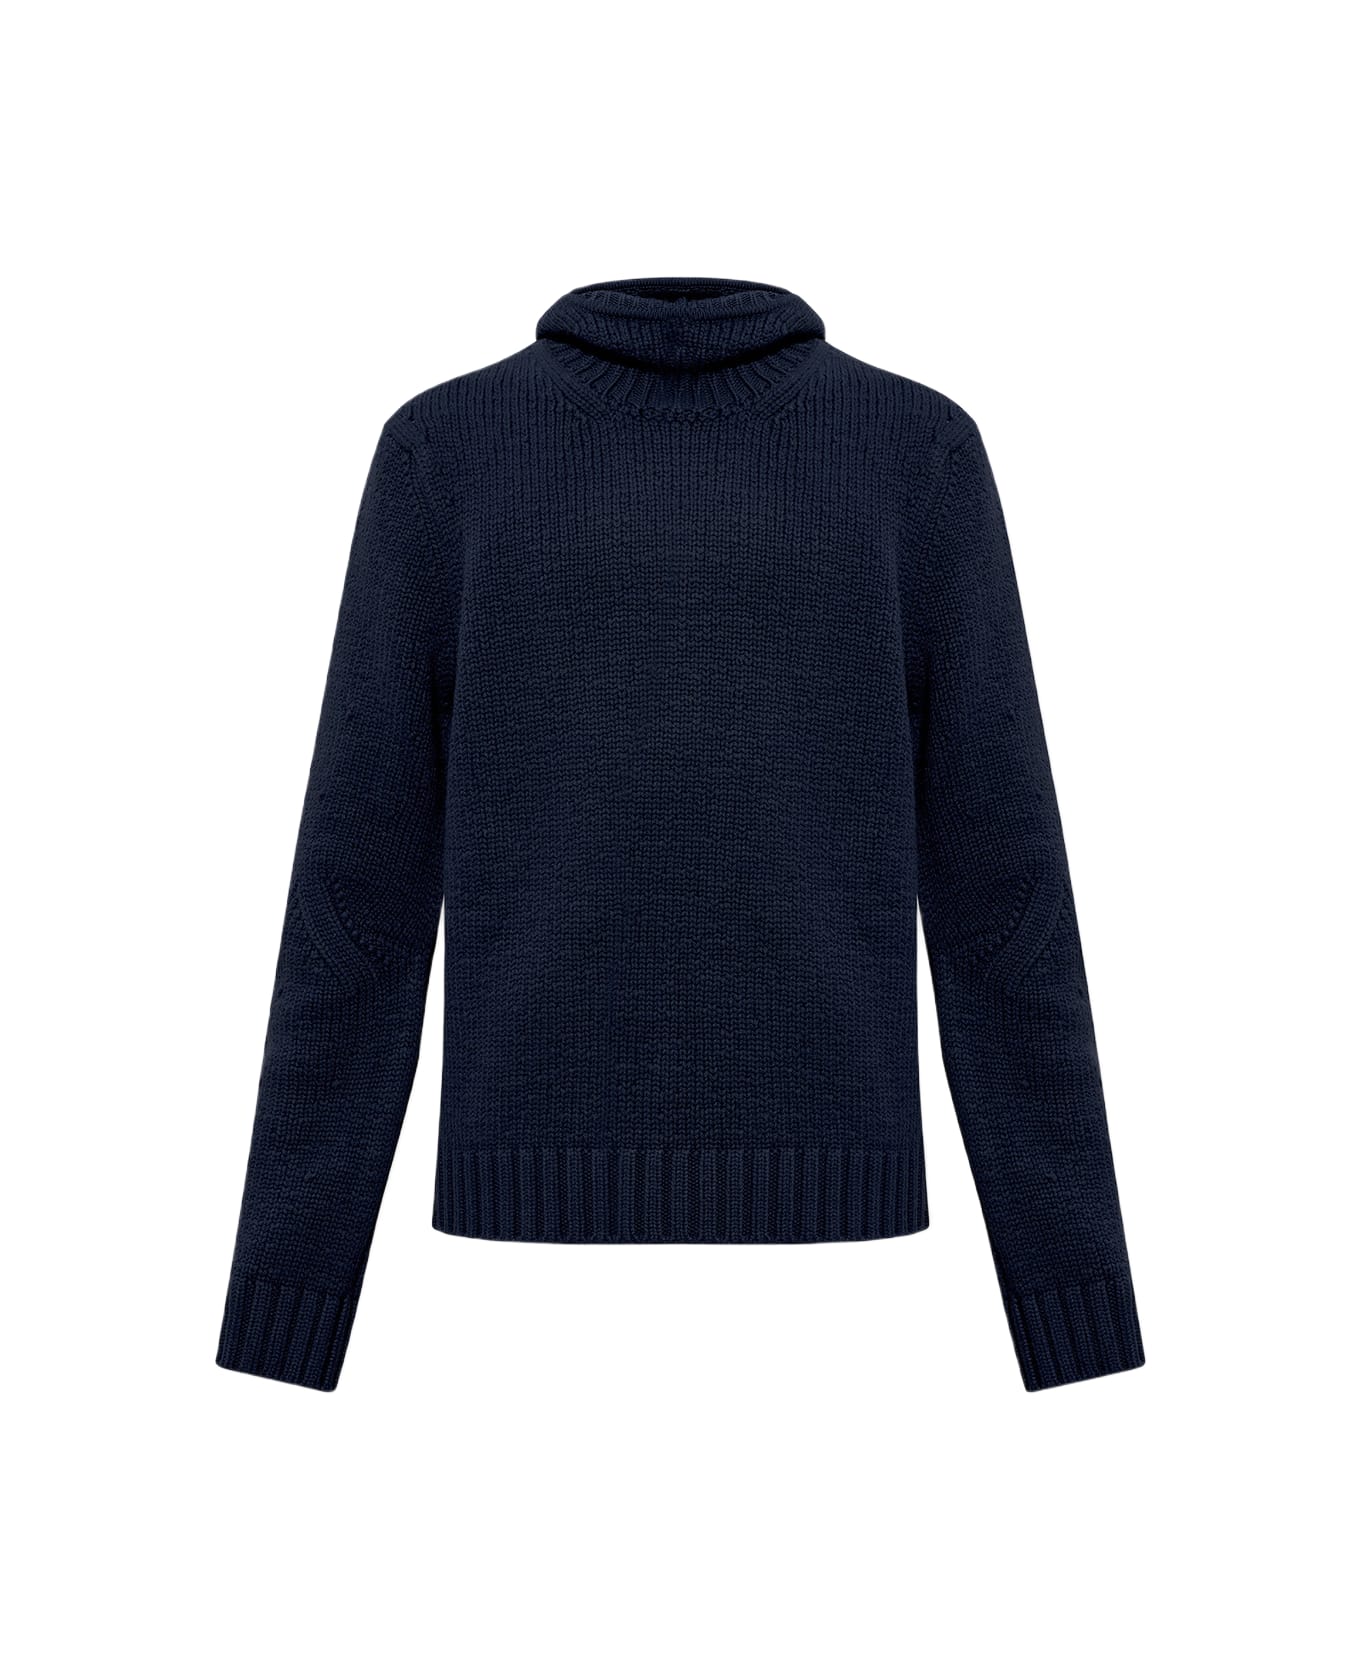 Bottega Veneta Hooded Sweater - NAVY